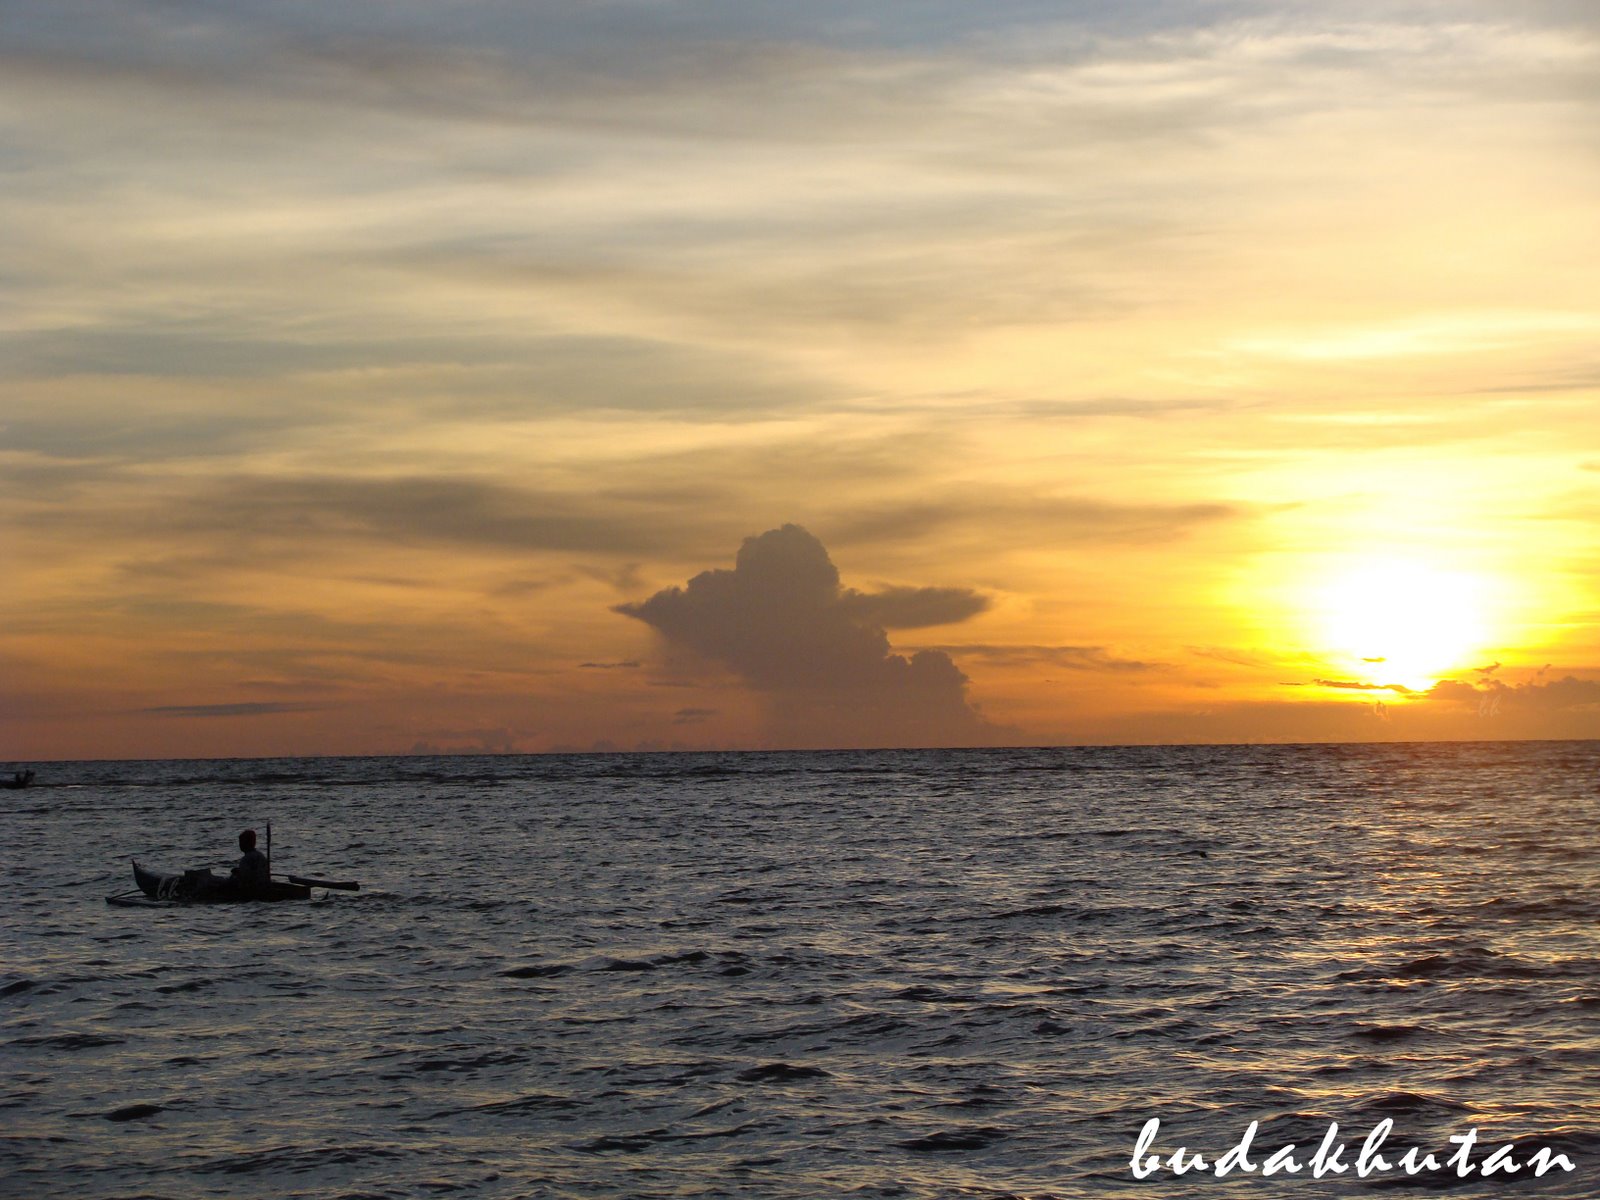 [Sunset+nelayan+budakhutan.jpg]